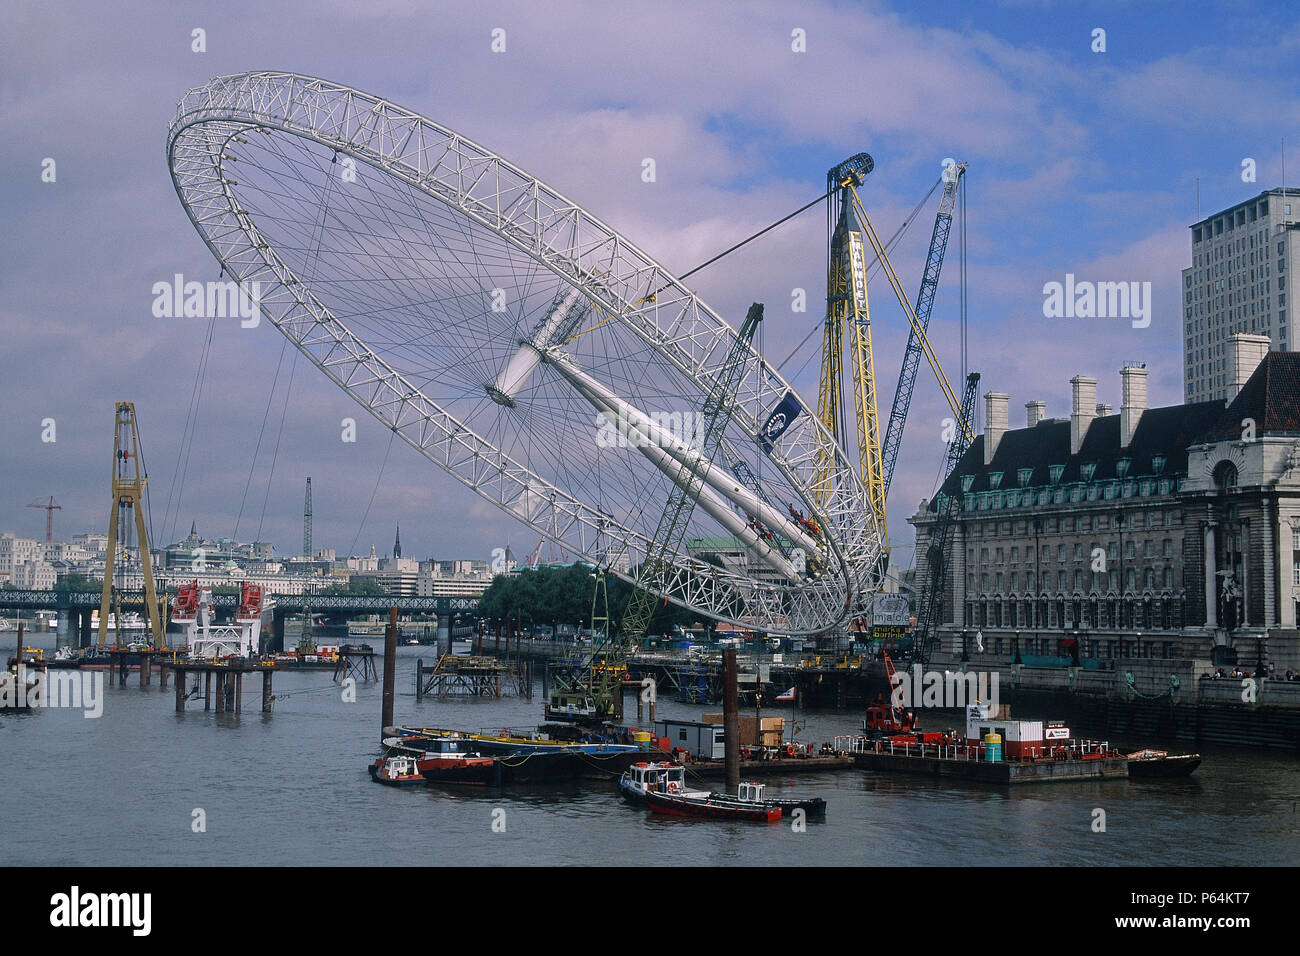 L'érection de London Eye, grande roue du millénaire. Londres, Royaume-Uni. Conçu par David Marks et Julia Barfield. Banque D'Images